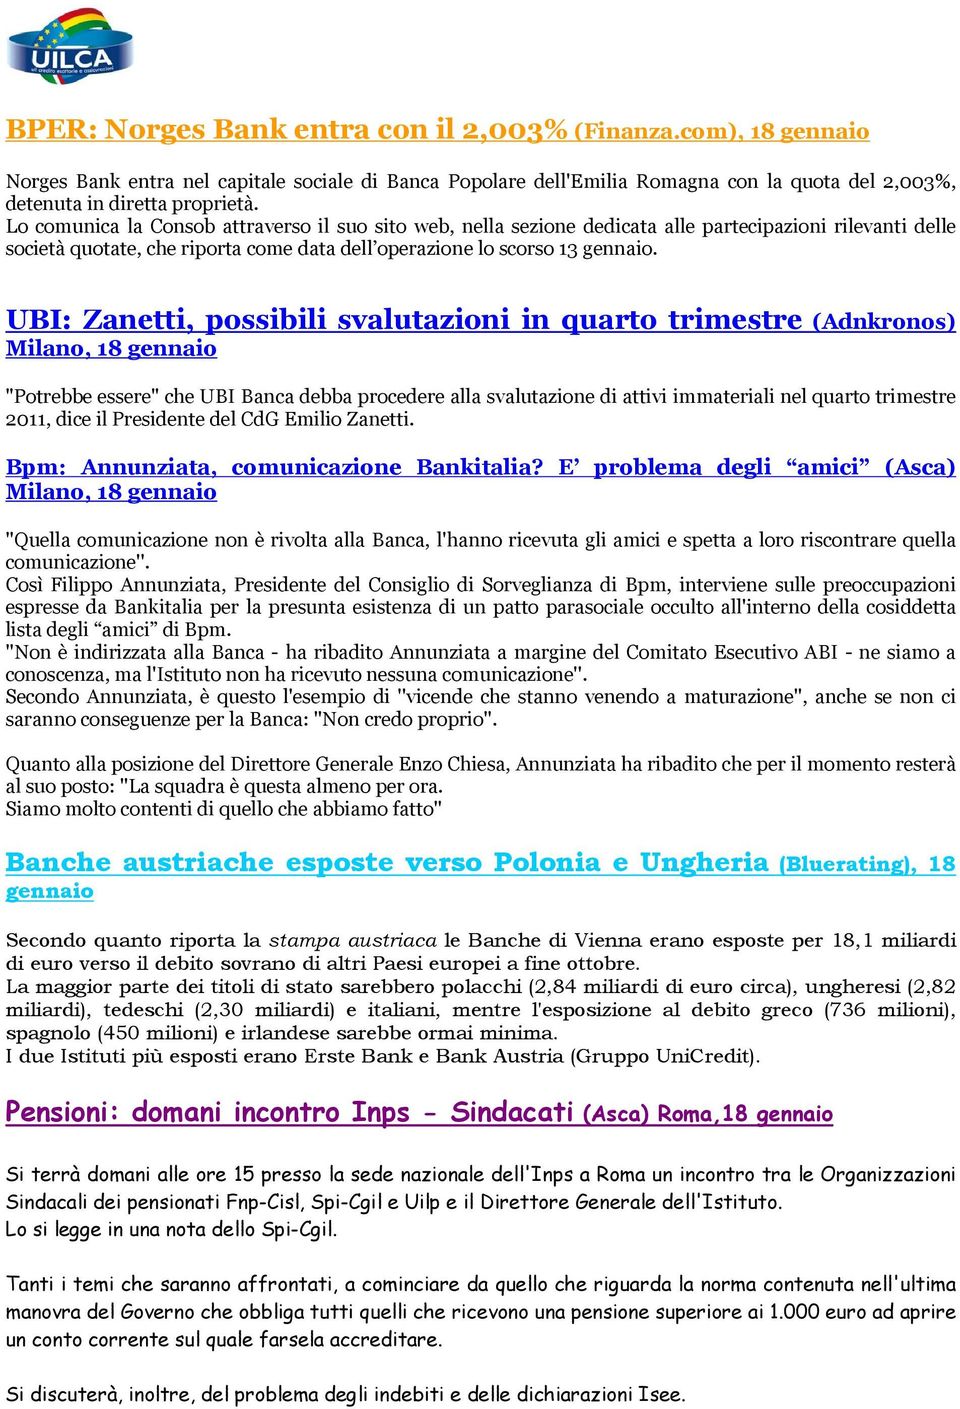 UBI: Zanetti, possibili svalutazioni in quarto trimestre (Adnkronos) Milano, 18 gennaio "Potrebbe essere" che UBI Banca debba procedere alla svalutazione di attivi immateriali nel quarto trimestre